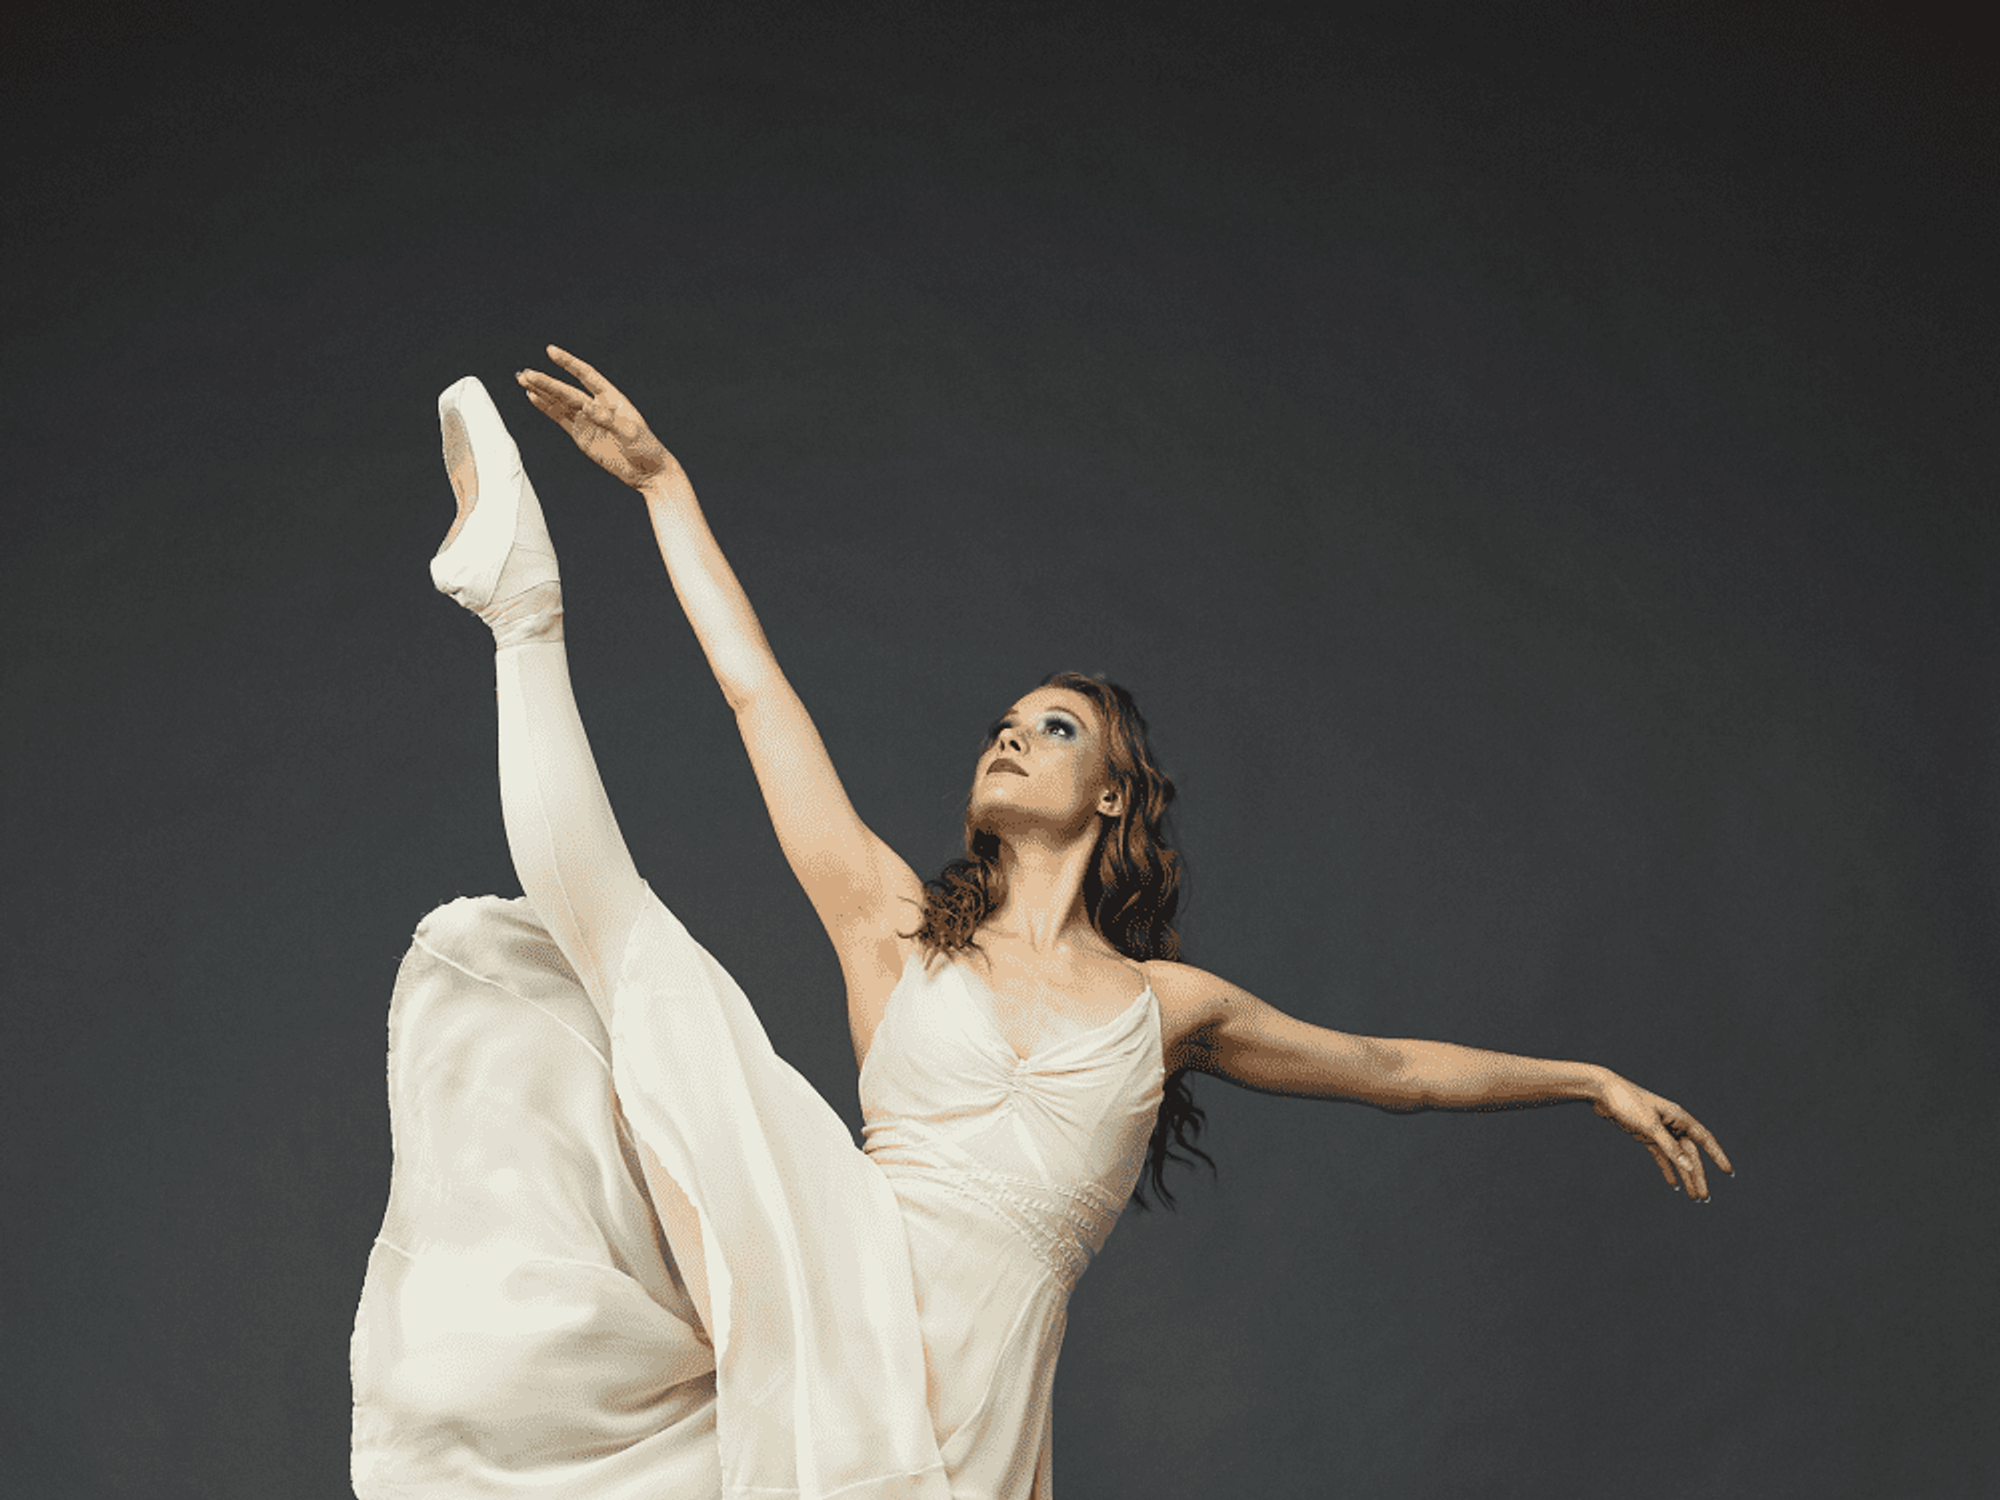 Texas Ballet Theater presents A Midsummer Night’s Dream